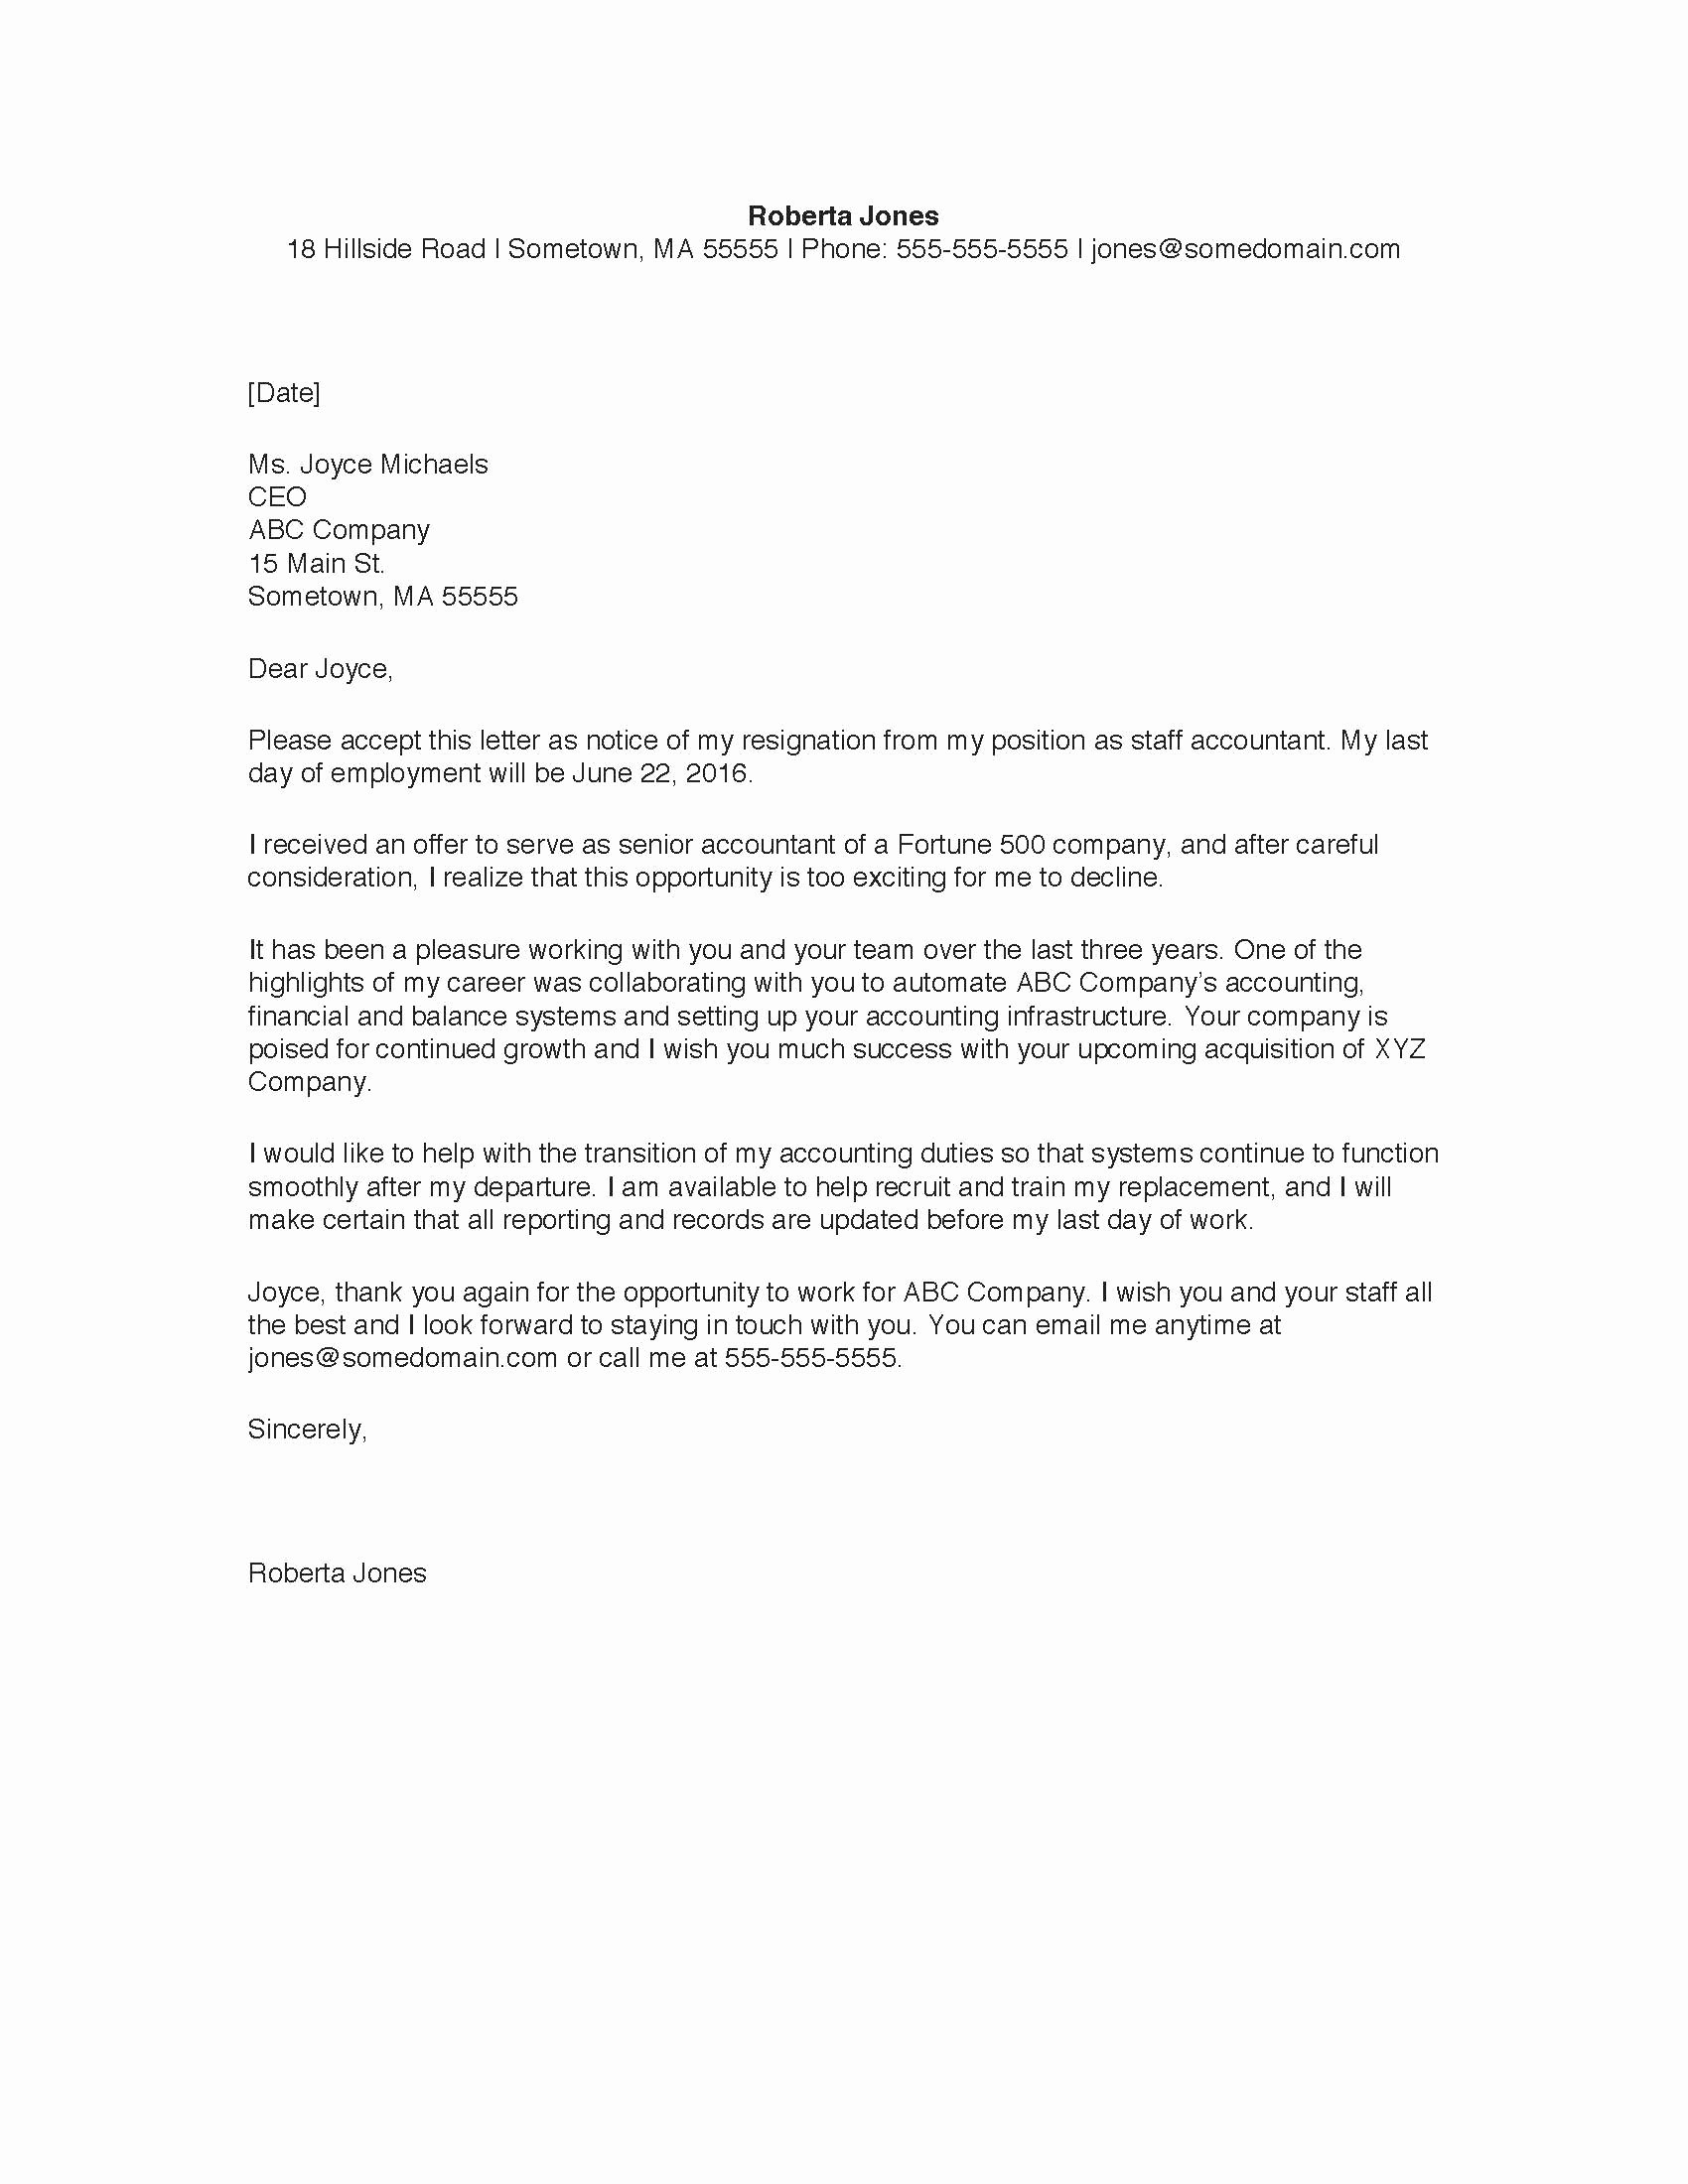 Formal Resignation Letter Samples New Resignation Letter